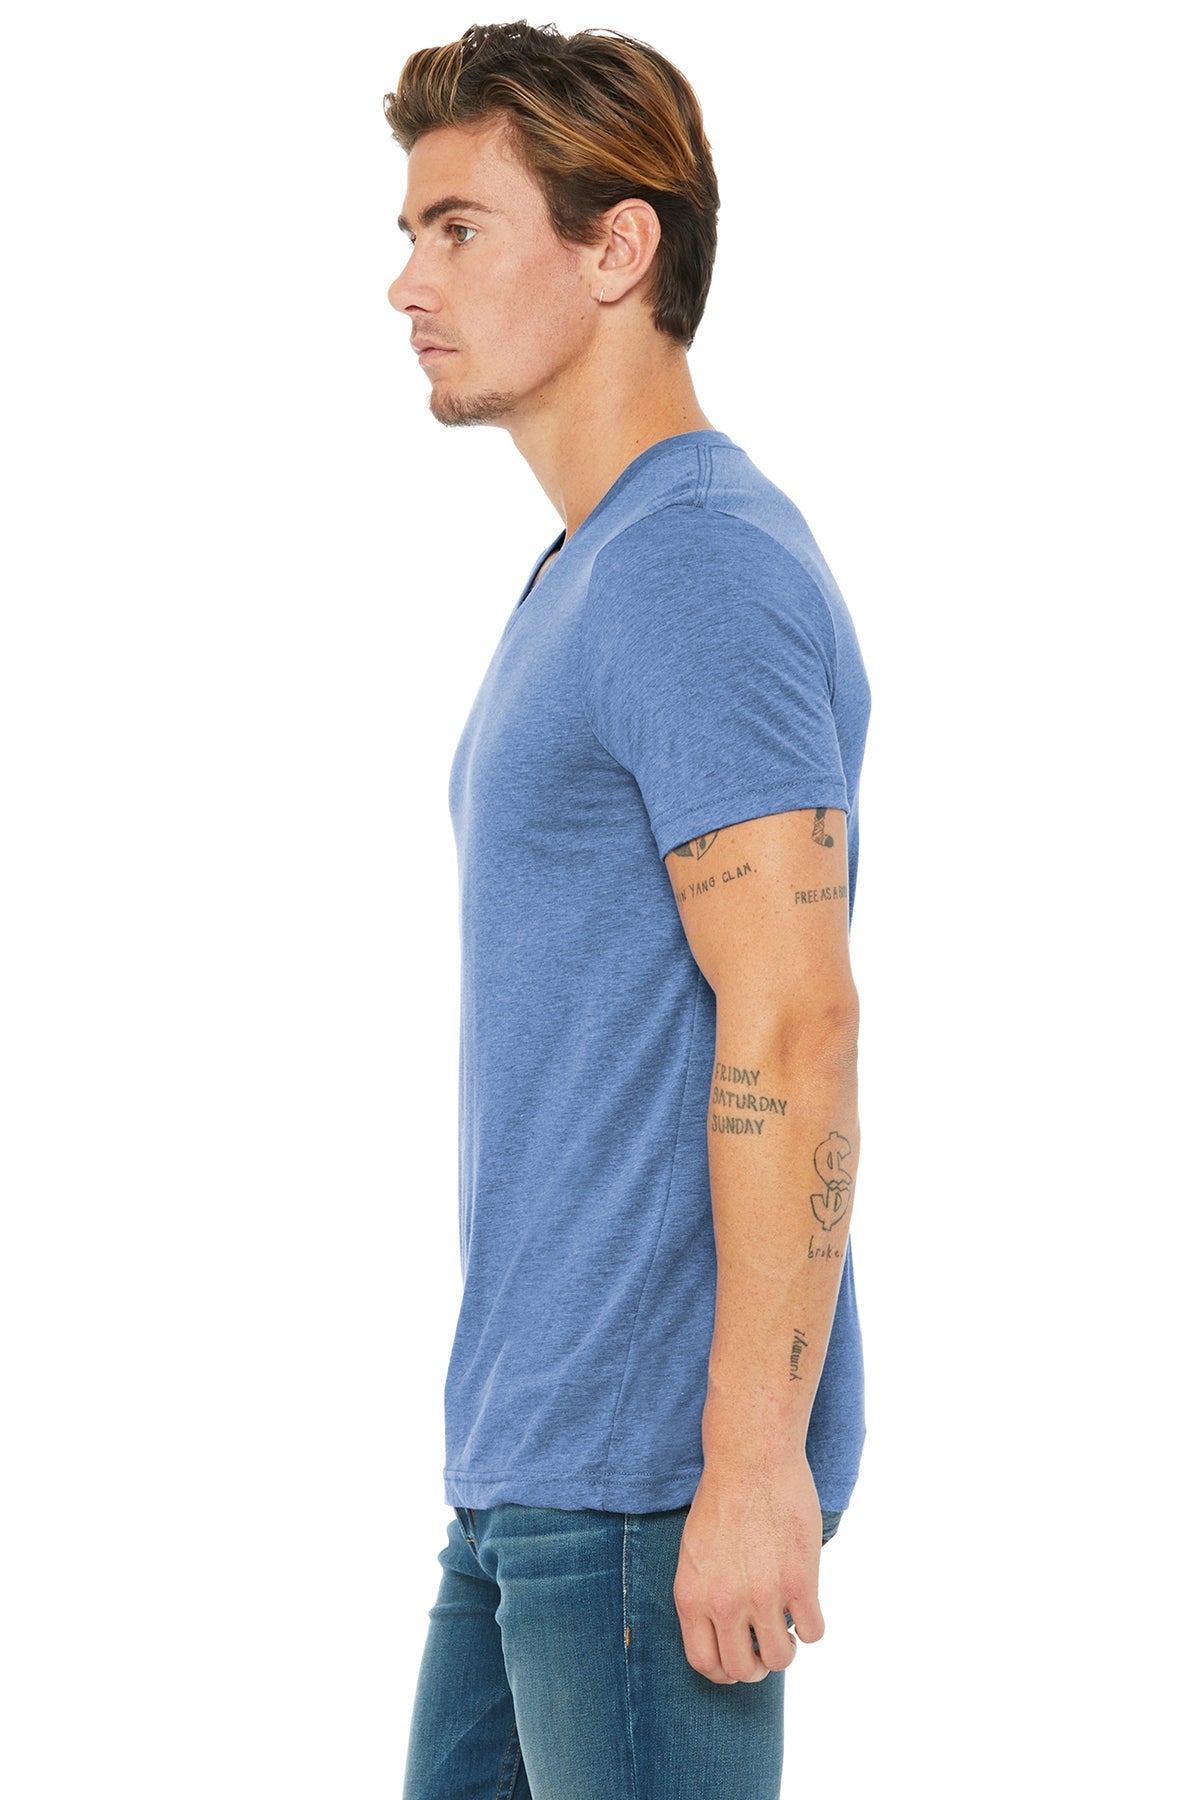 bella + canvas unisex triblend short sleeve v-neck t-shirt 3415c blue triblend